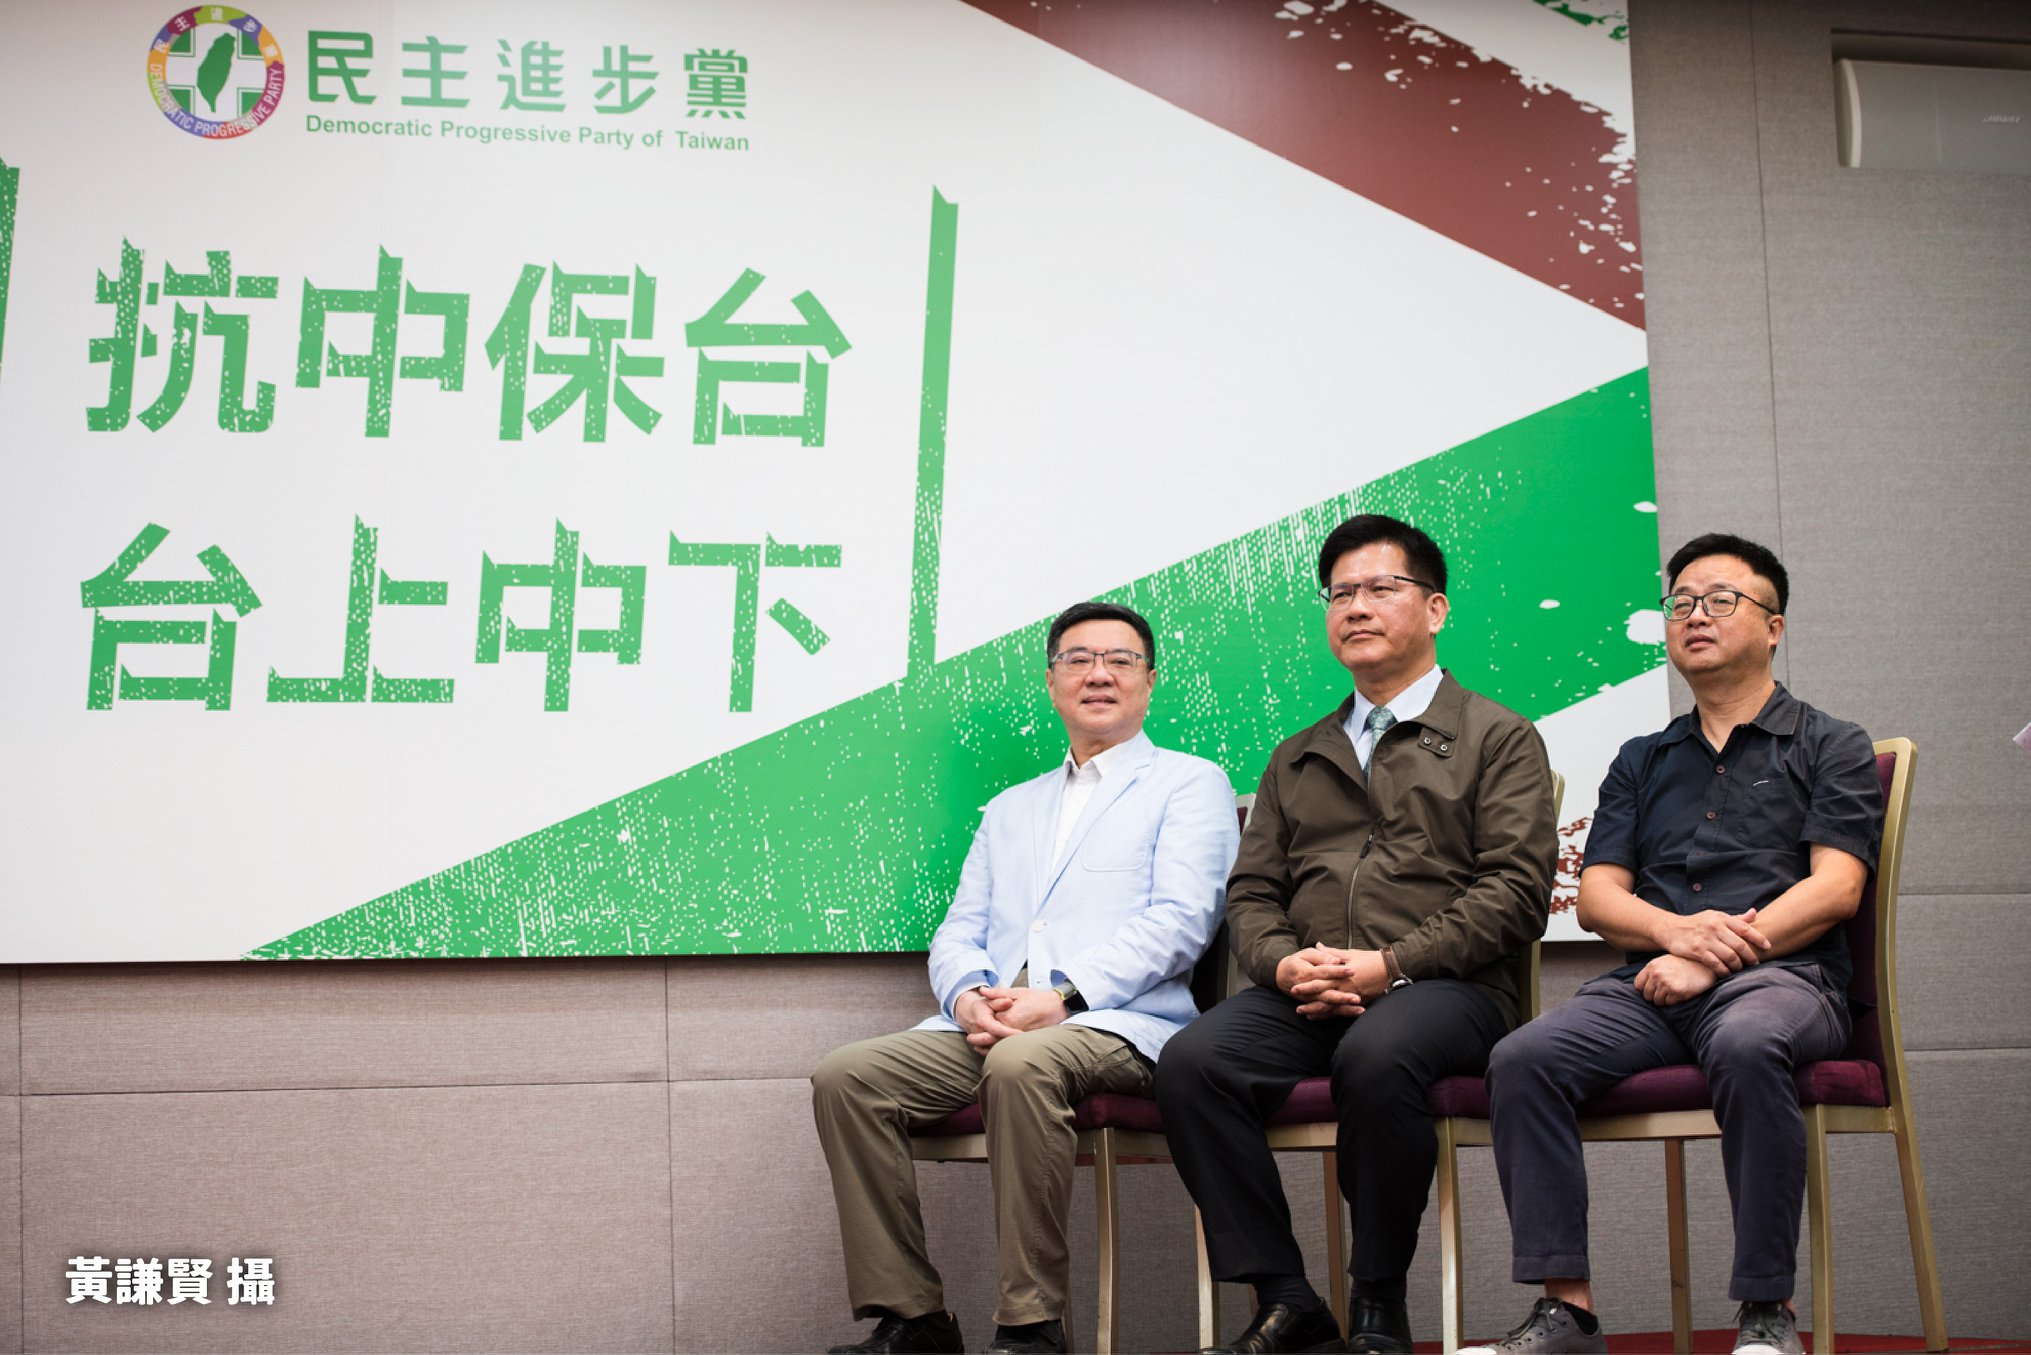 「抗中保台」是民進黨最常用的選舉口號。圖/取自台灣基進臉書